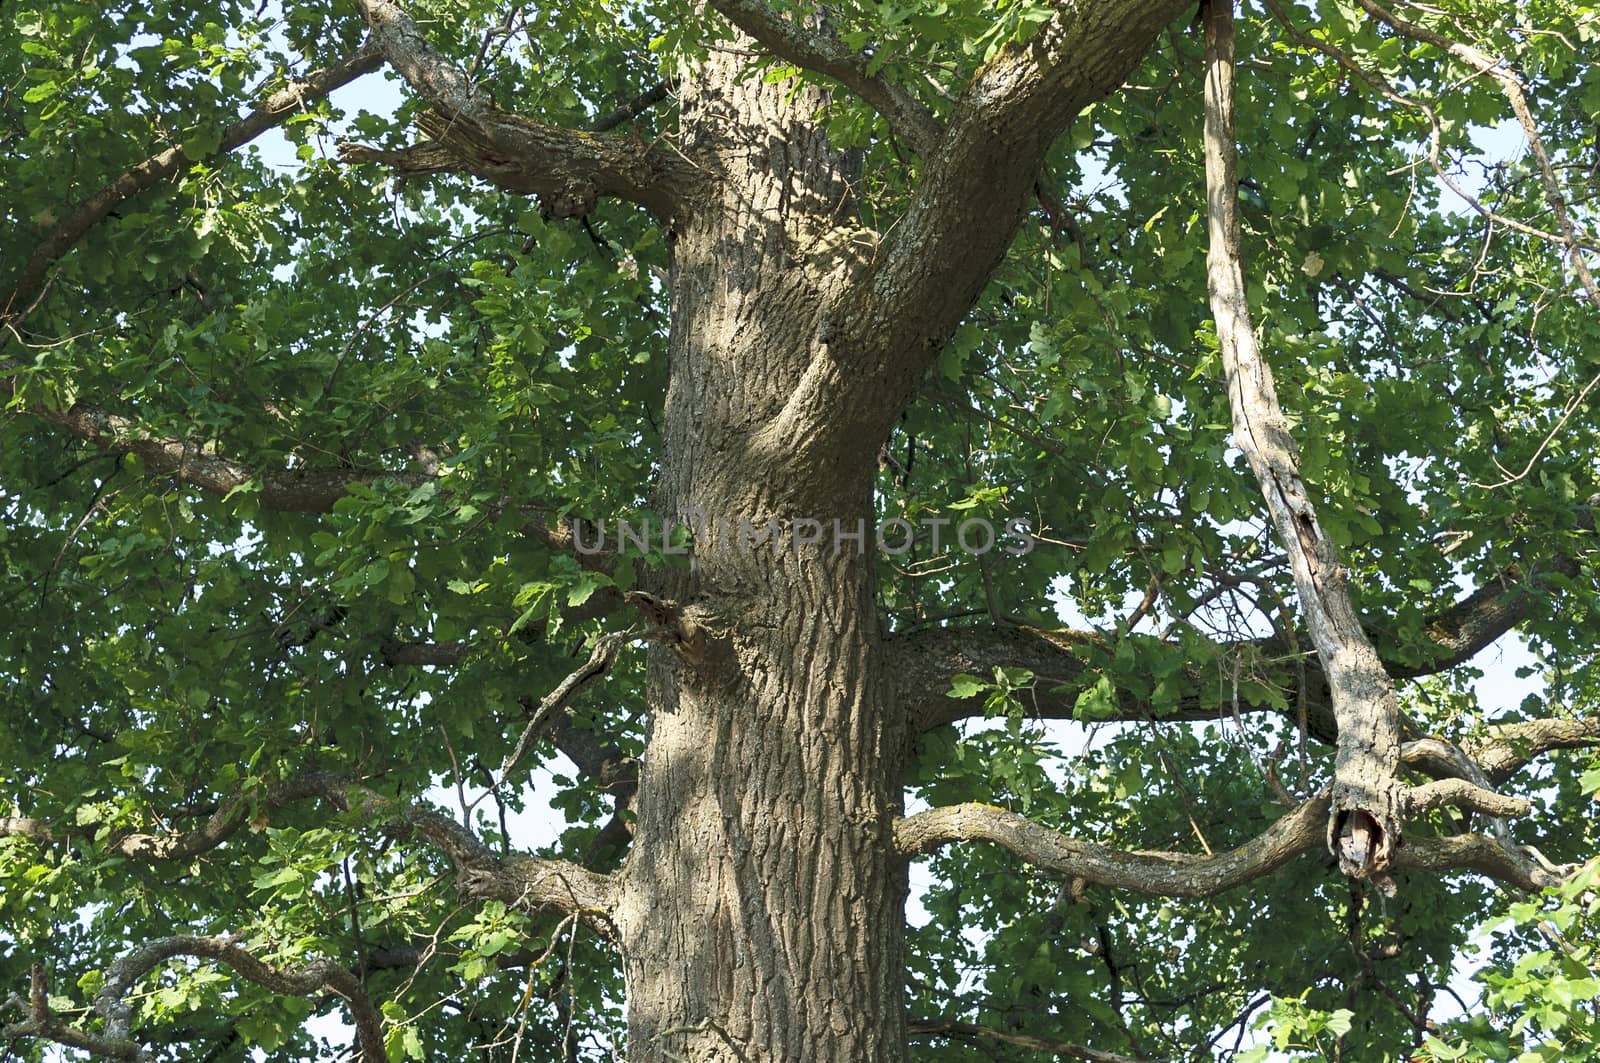 Oak tree trunk in sunny summer day